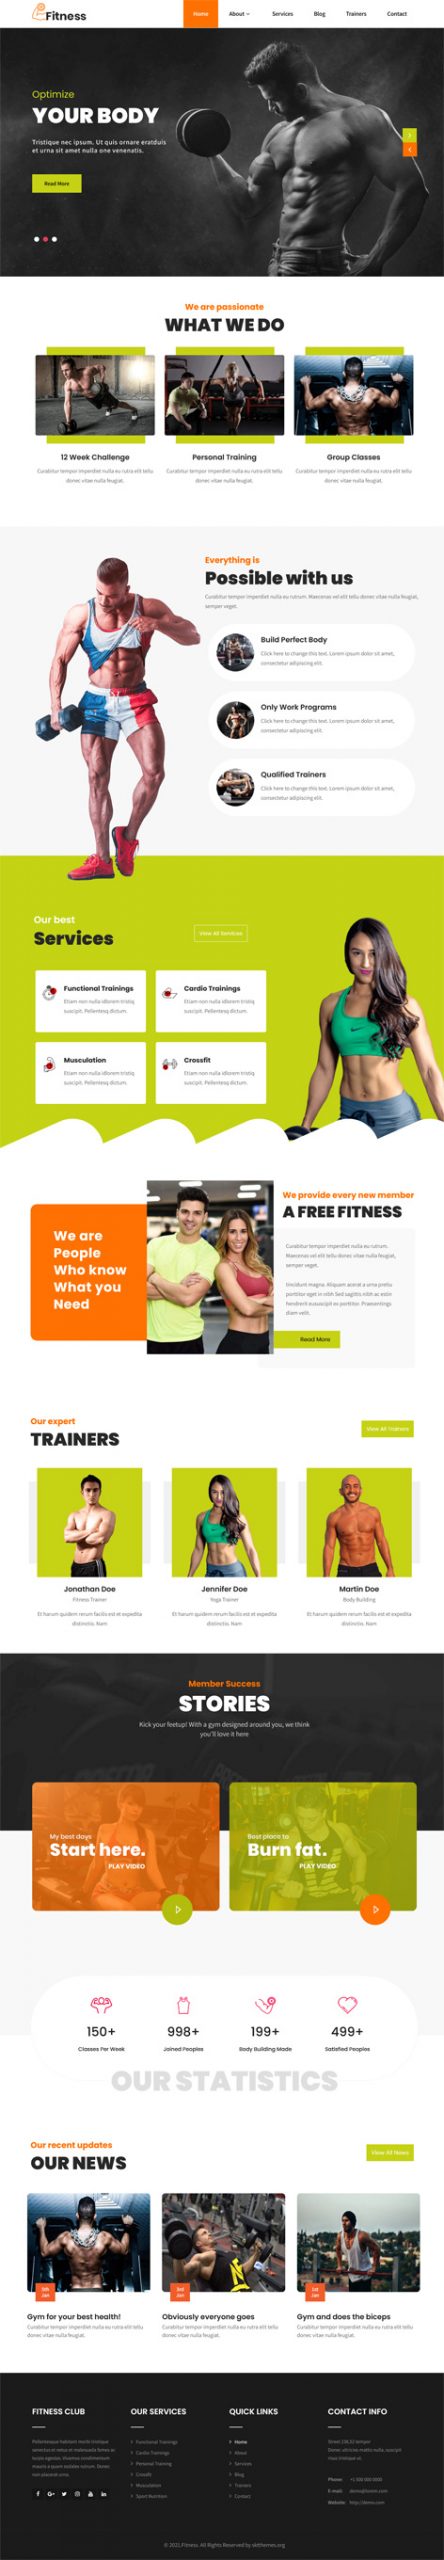 Fitness Gym WordPress theme scaled